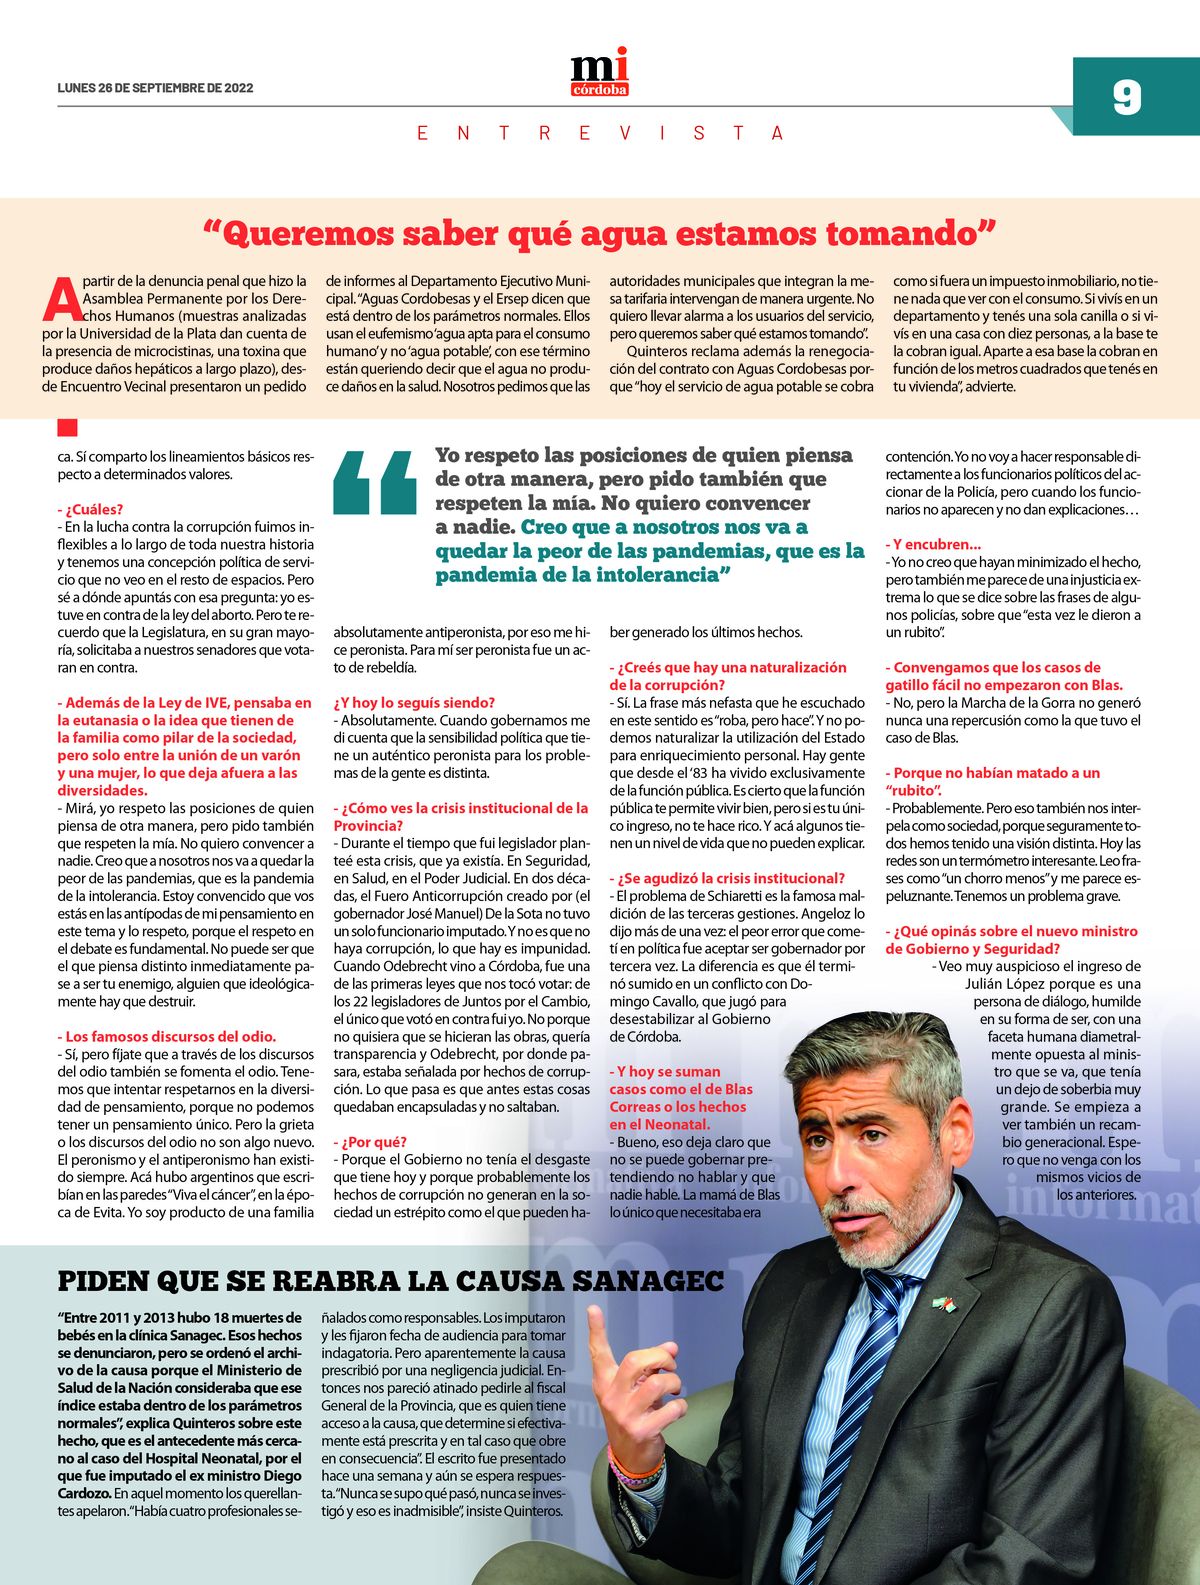 Ya circula la 28va edición del semanario Marca Informativa Córdoba